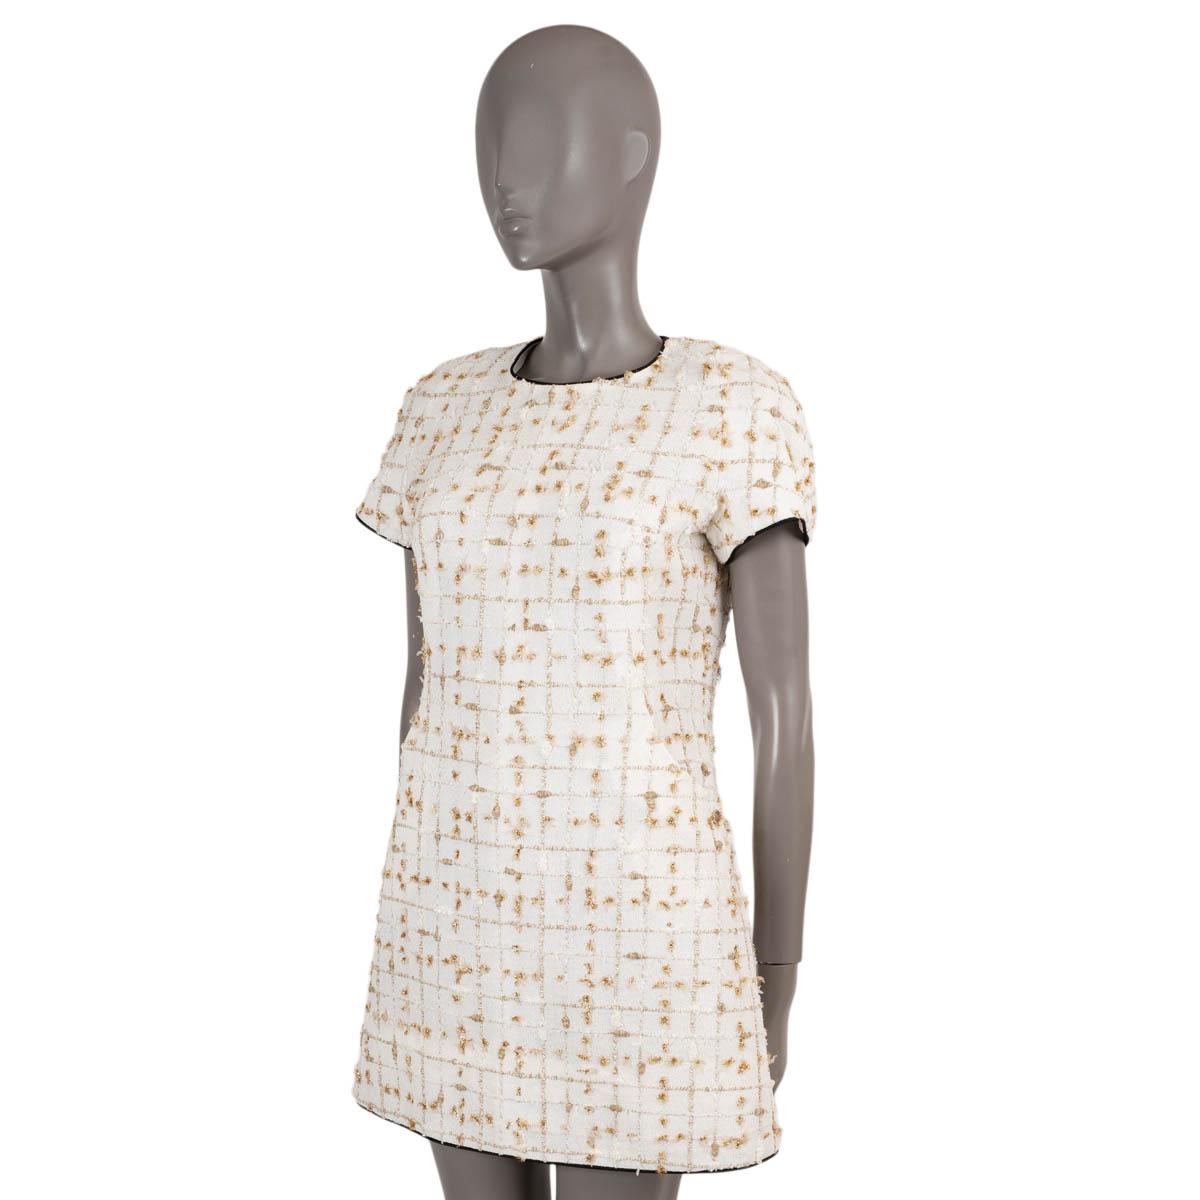 100% authentisches Chanel Kleid aus Lurex-Tweed in Weiß, Beige und Gold aus Polyamid (71%), Viskose (9%), Polyester (8%), Baumwolle (6%) und Acryl (6%). Mit Rundhalsausschnitt, Schlitztasche und kurzen Ärmeln. Schließt mit einem verdeckten